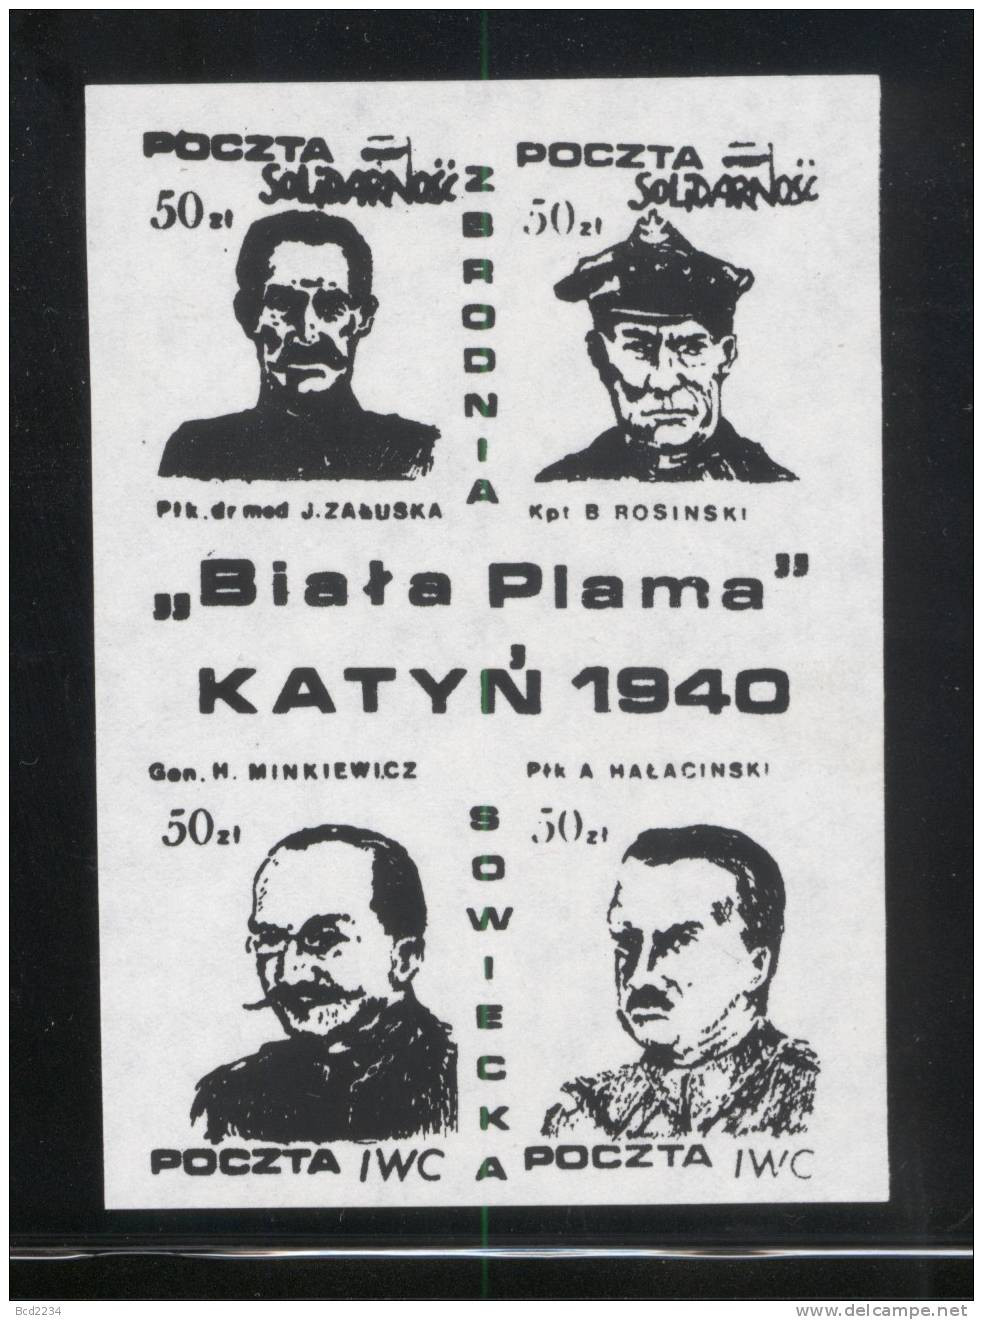 POLAND SOLIDARNOSC (POCZTA IWC) KATYN WHITE STAIN 1940 SET OF 3 BLOCKS OF 4 (SOLID0070/0211)) - Solidarnosc Labels